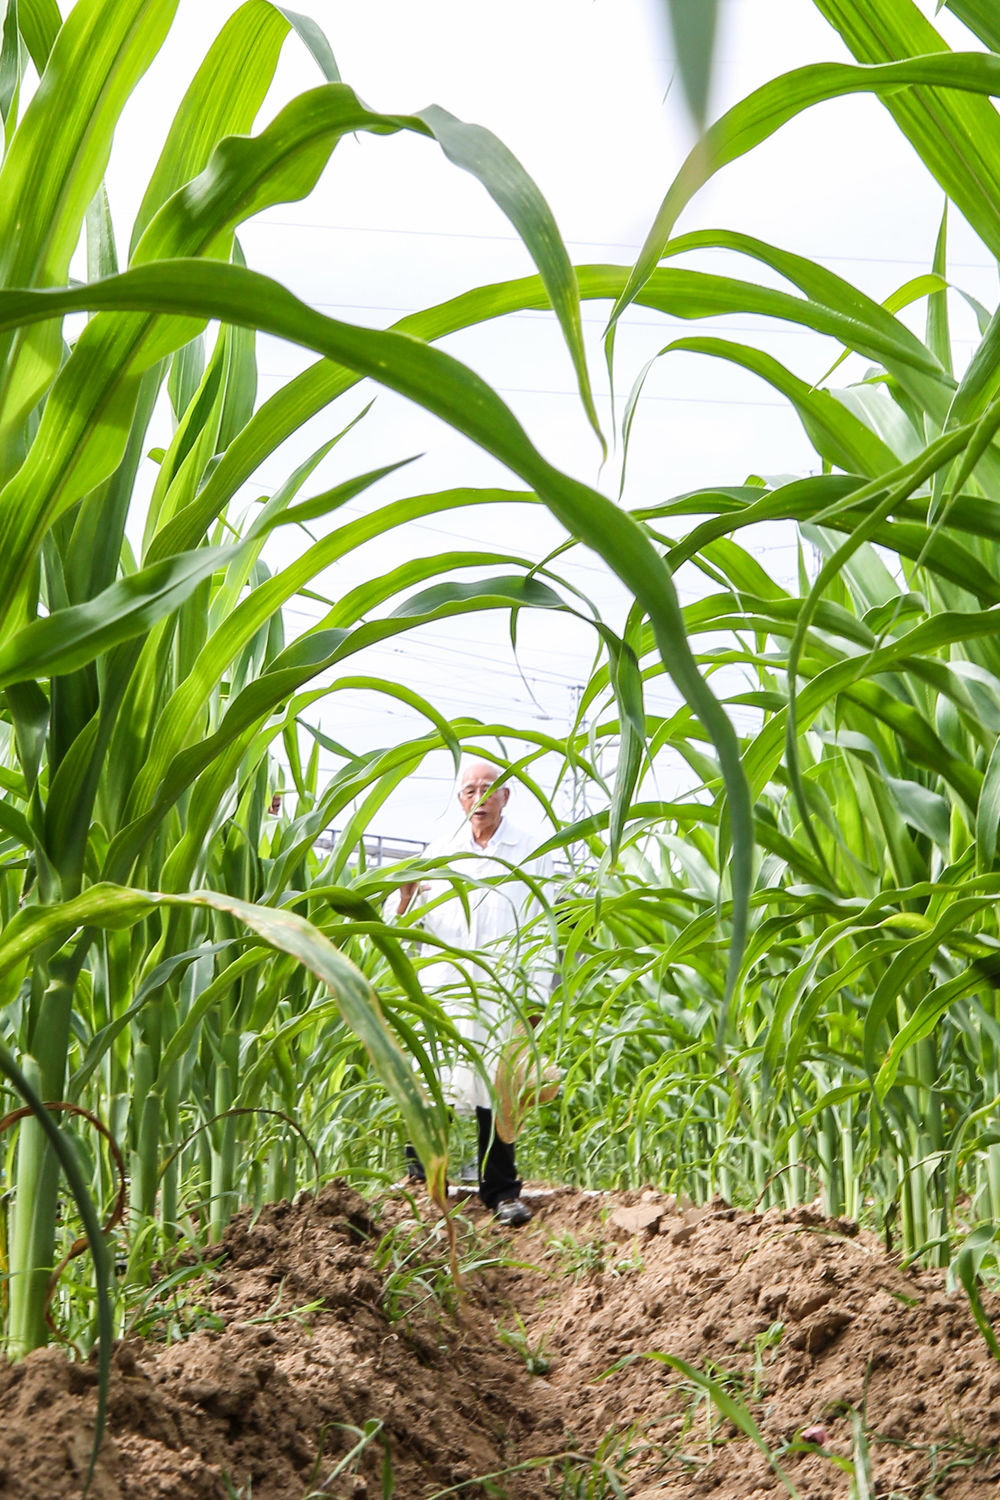 玉米育种专家程相文在海南三亚南繁科研育种基地观察玉米生长情况（2022年12月15日摄）。新华社记者 张丽芸 摄